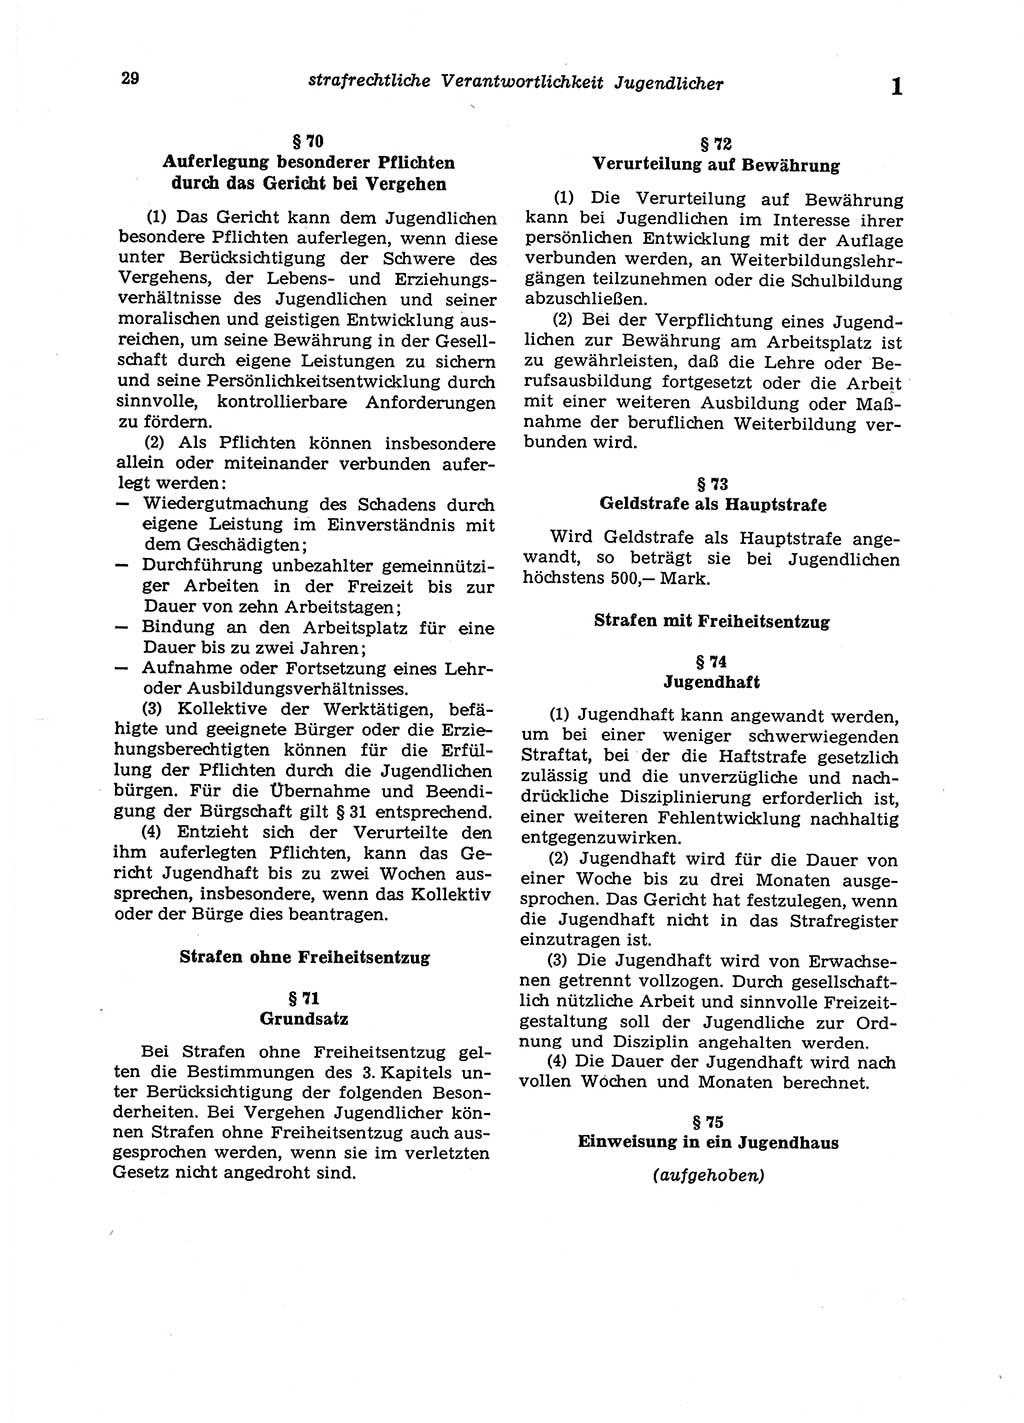 Strafgesetzbuch (StGB) der Deutschen Demokratischen Republik (DDR) 1987, Seite 29 (StGB DDR 1987, S. 29)